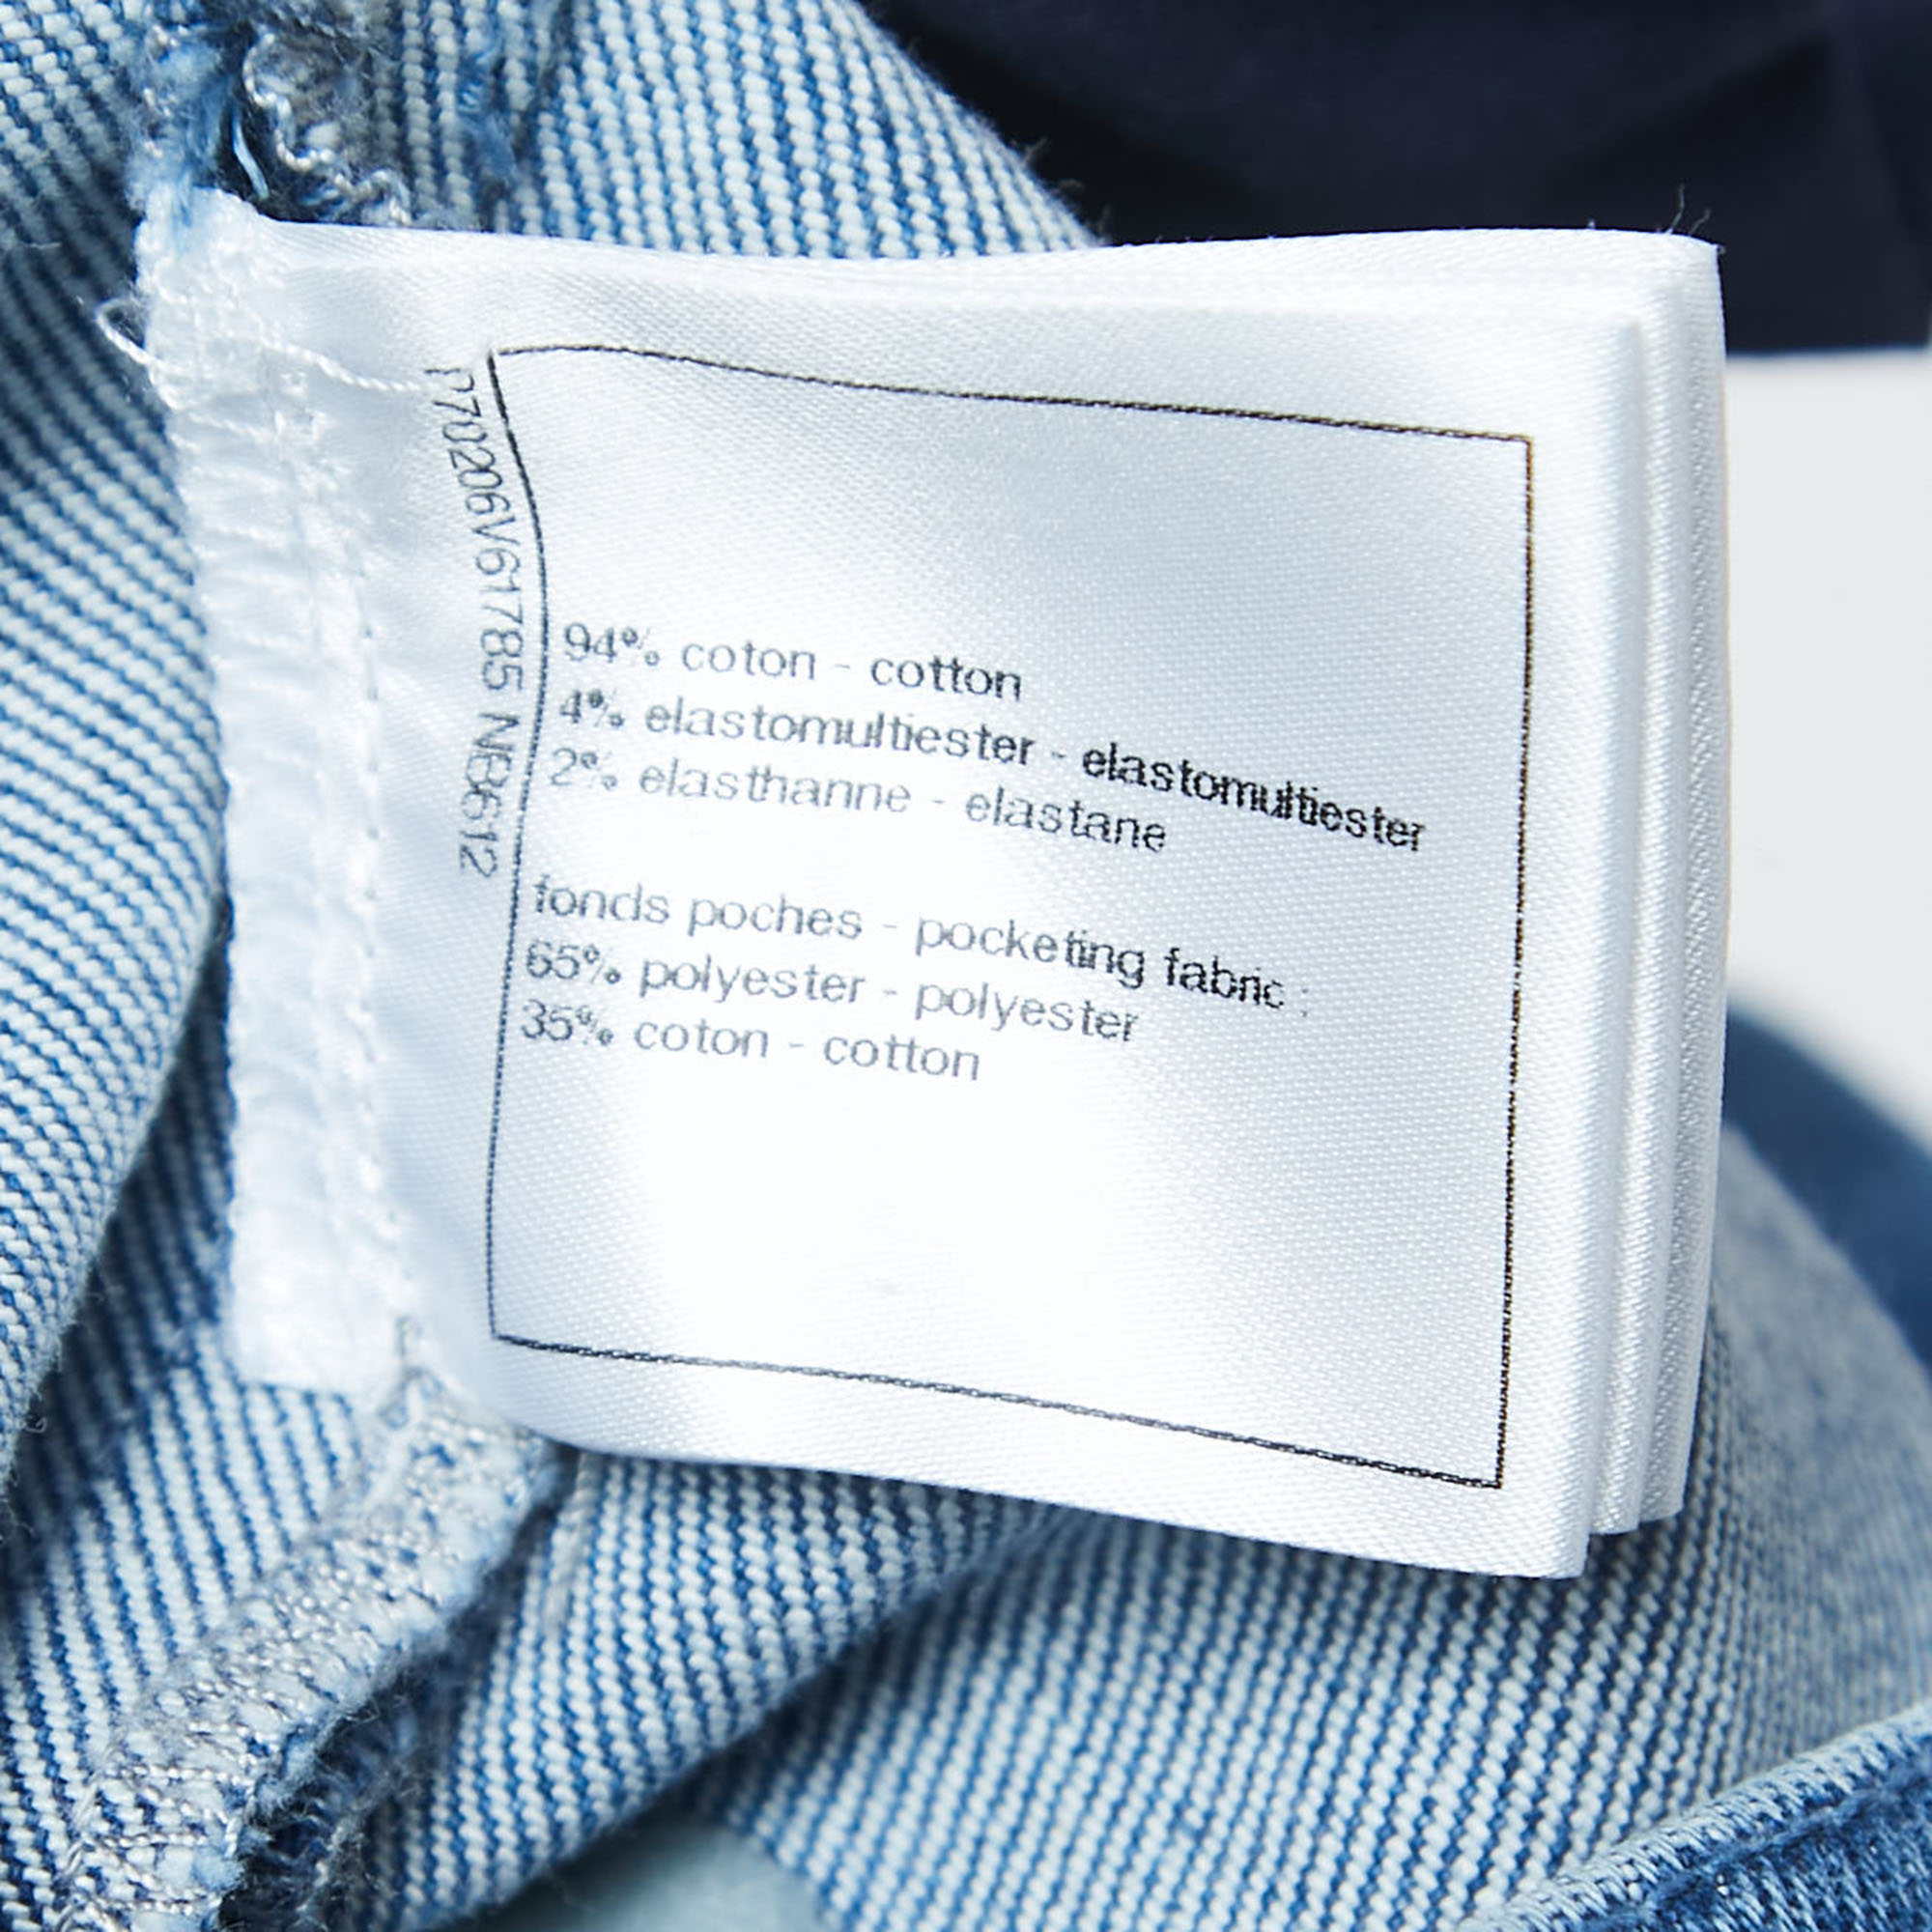 Chanel Blue Embossed Logo Denim Jeans S Waist 24